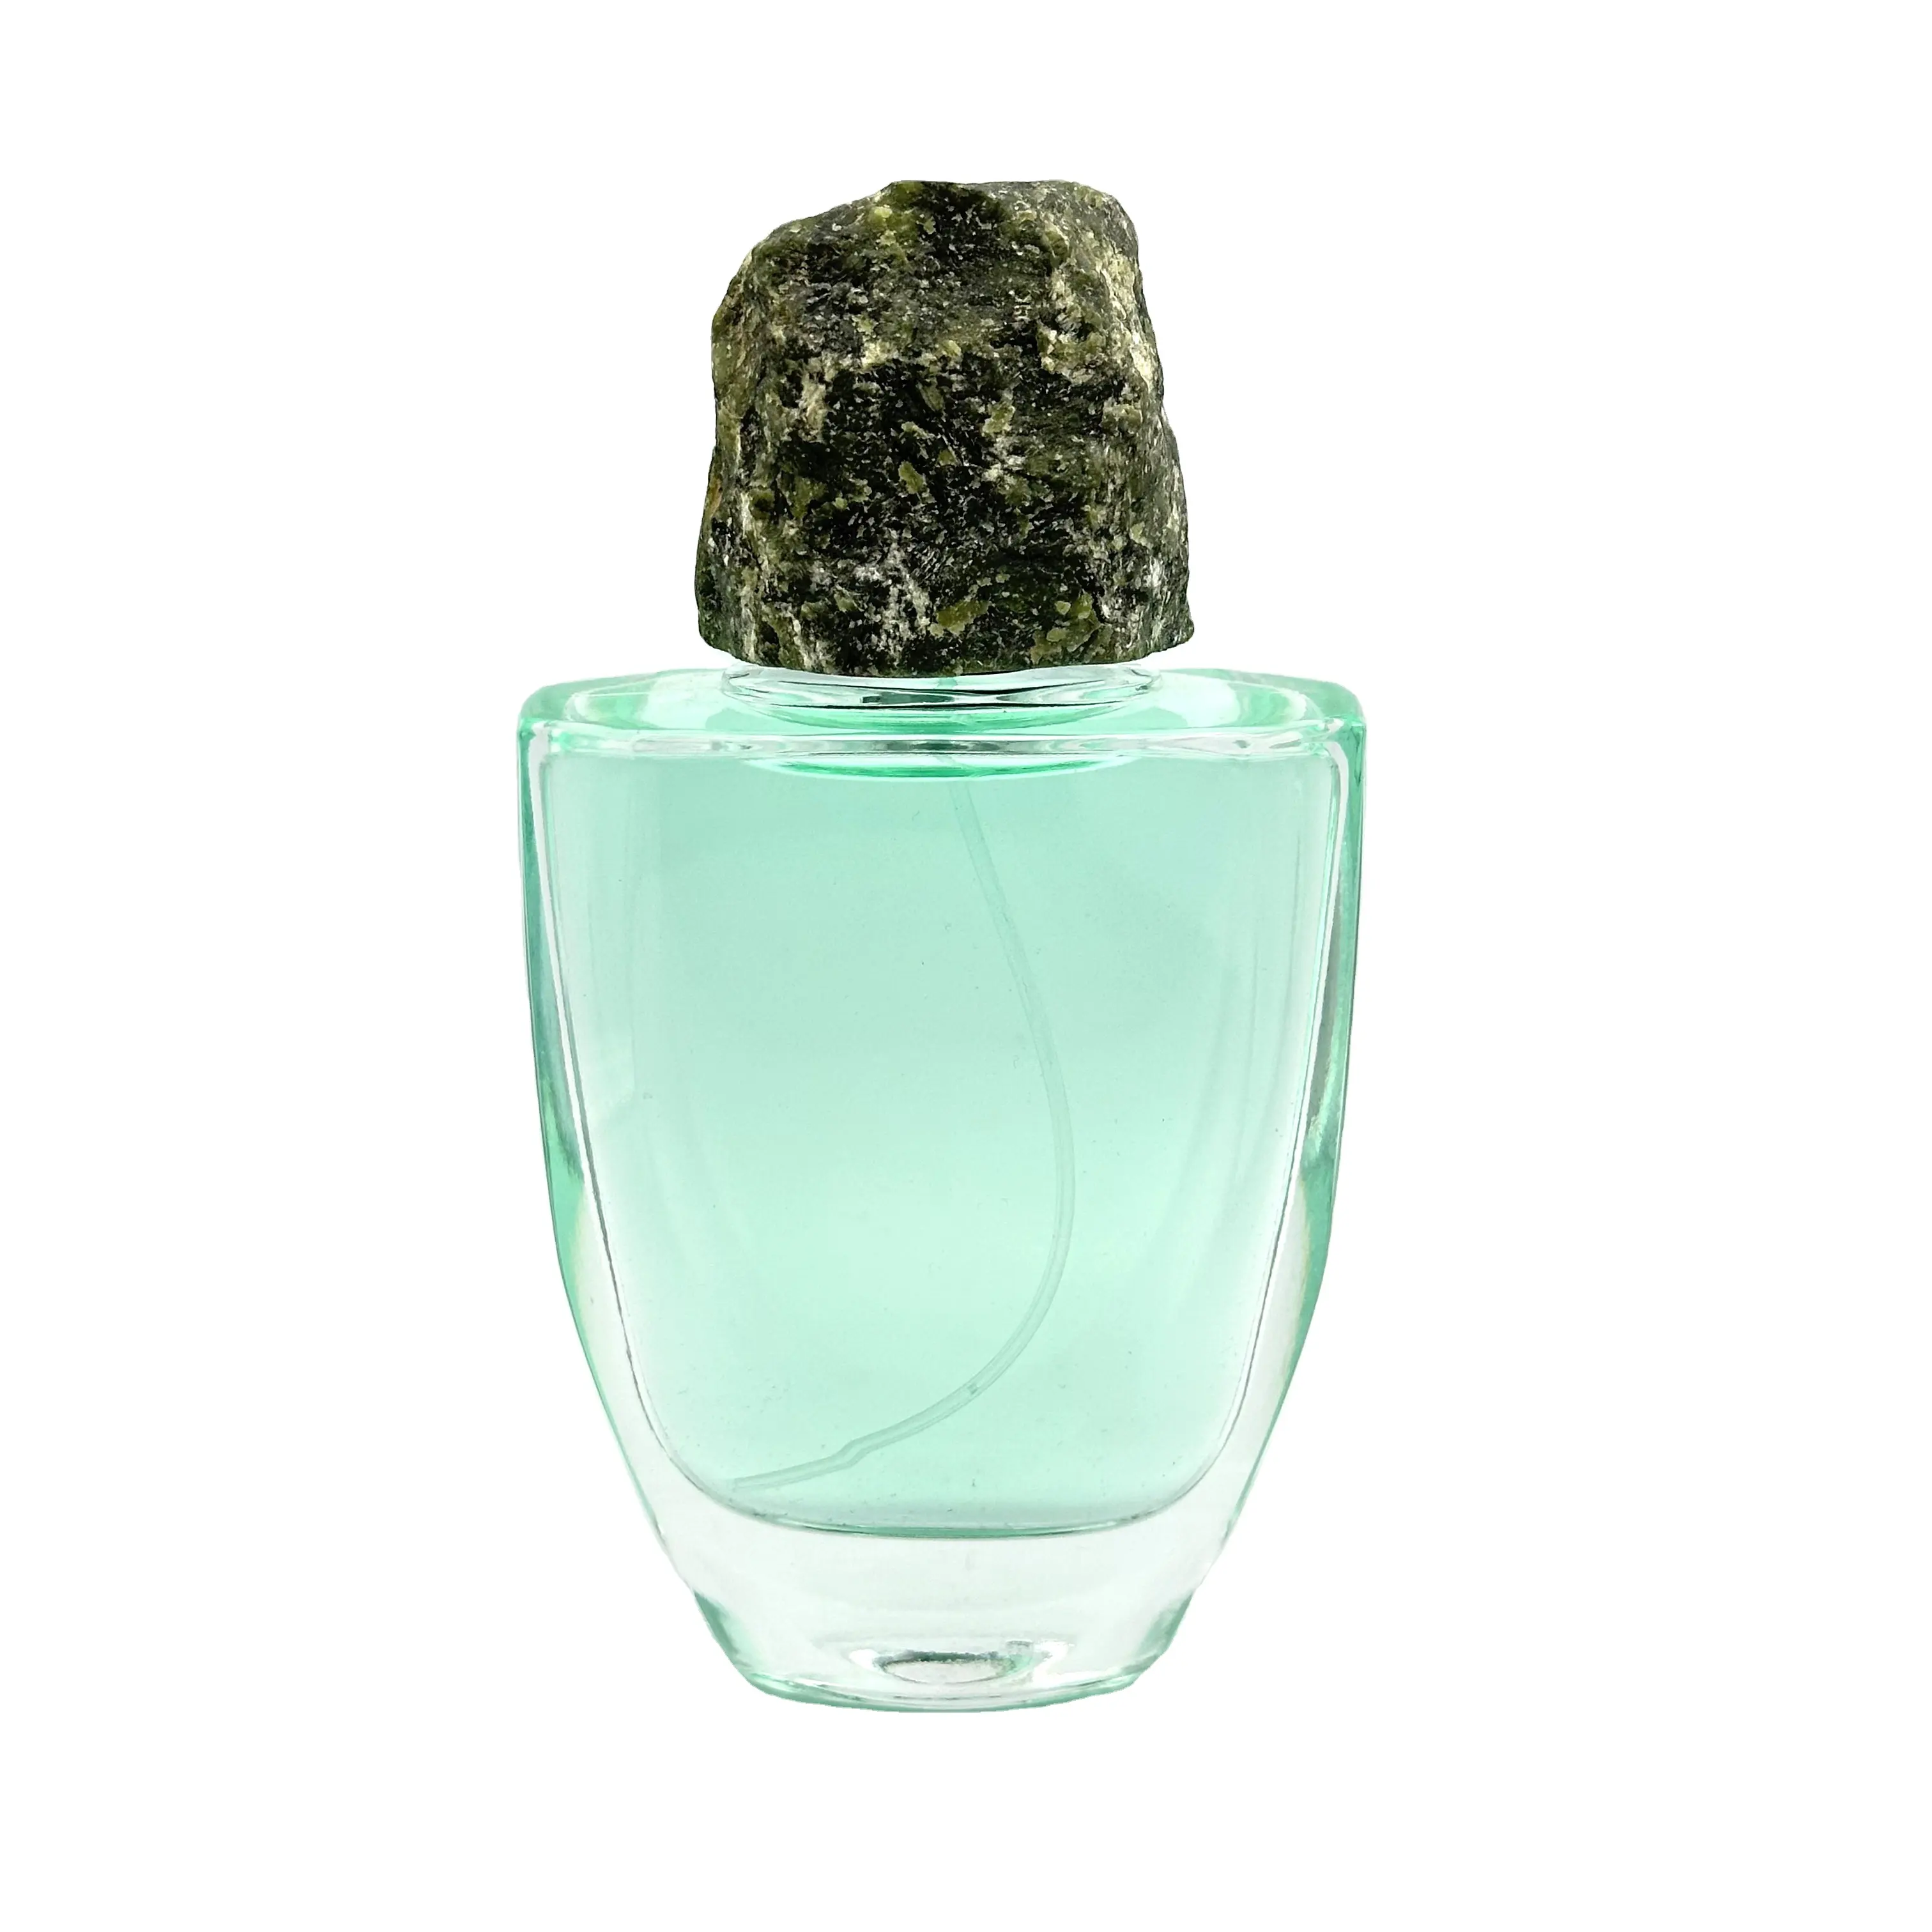 Entrega rápida Venta caliente plana transparente de lujo botella de Perfume de vidrio en aerosol 100ml con tapa de piedra